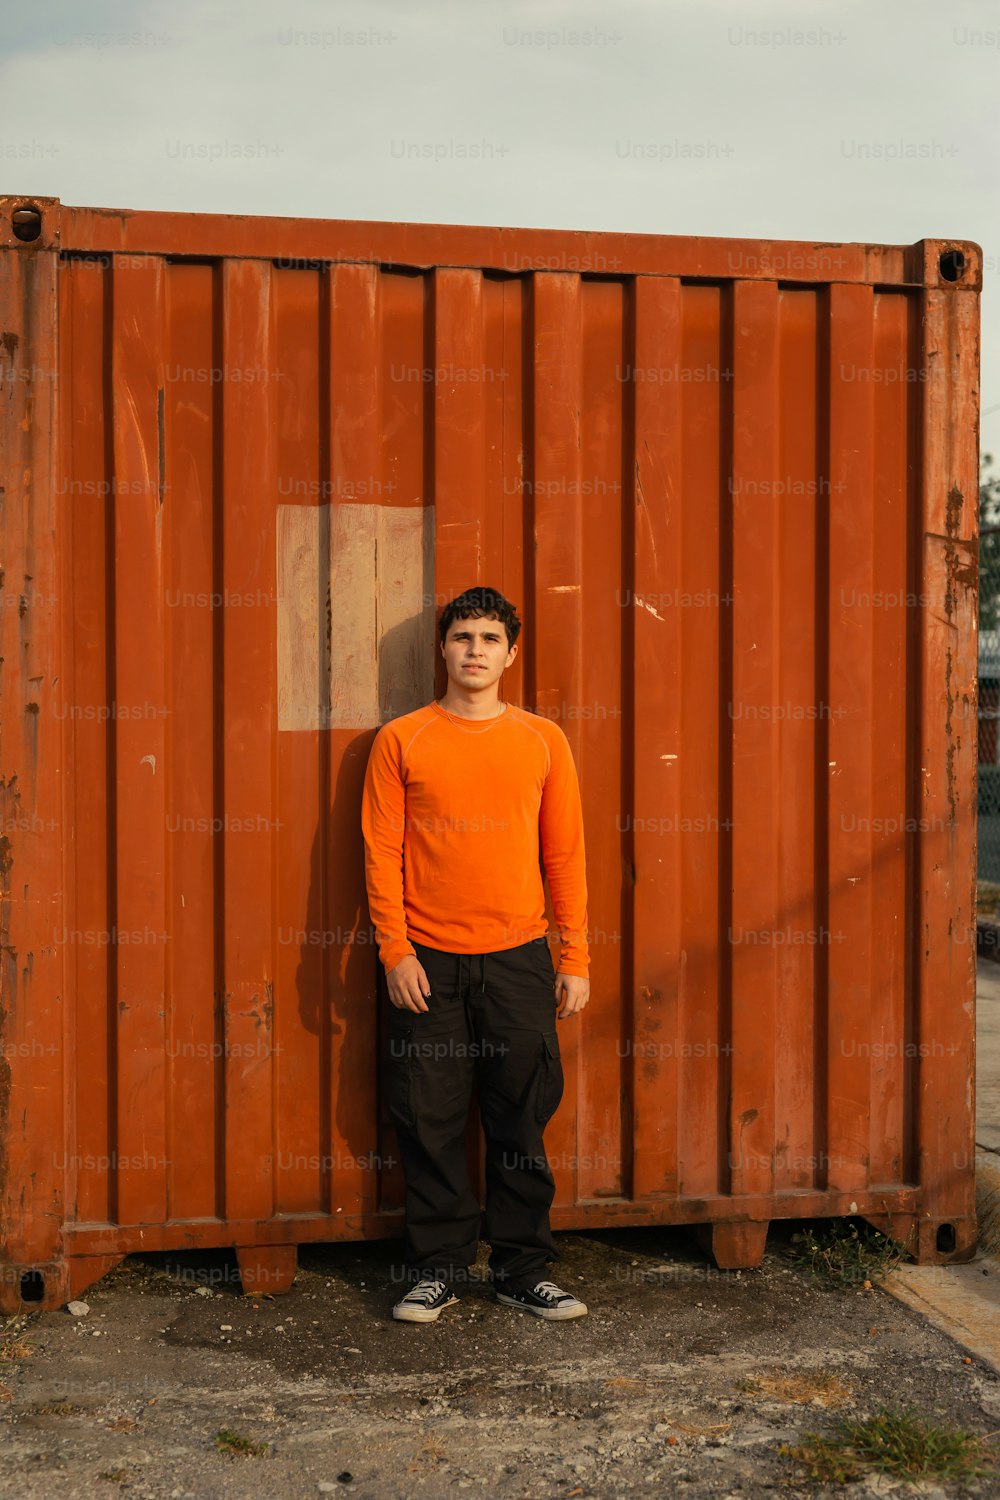 Un joven parado frente a un contenedor oxidado